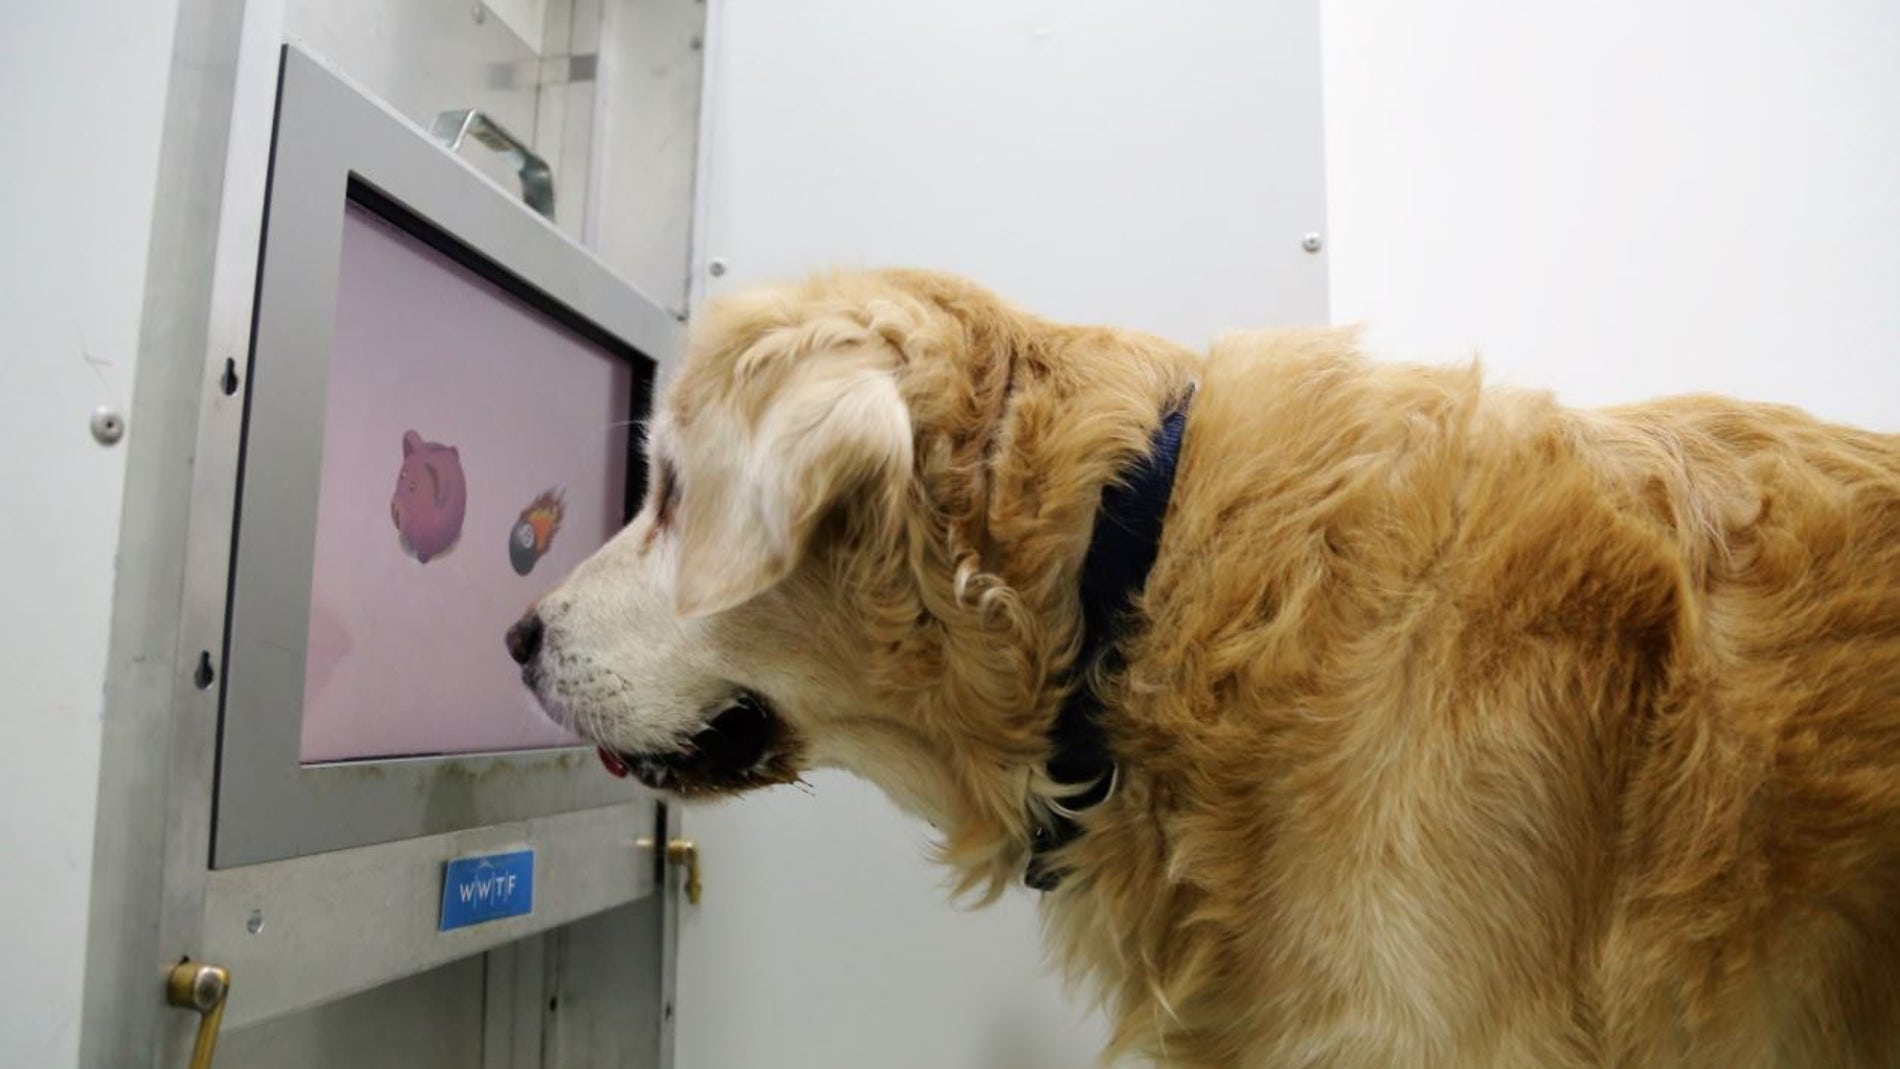 Juegos de pantalla tactil el nuevo sudoku para perros mayores